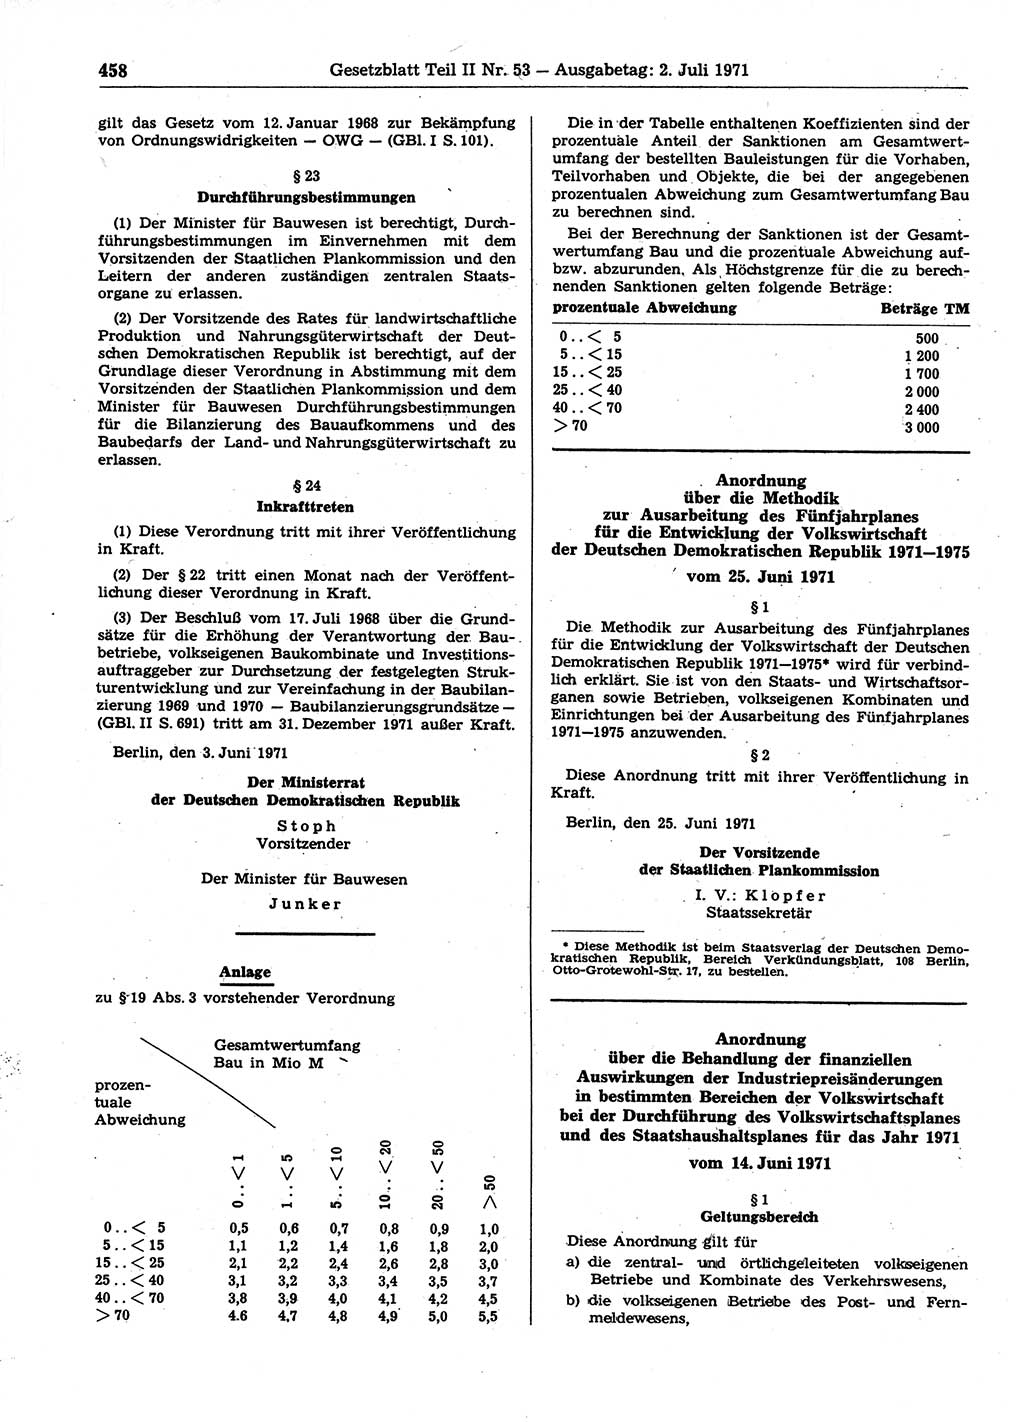 Gesetzblatt (GBl.) der Deutschen Demokratischen Republik (DDR) Teil ⅠⅠ 1971, Seite 458 (GBl. DDR ⅠⅠ 1971, S. 458)